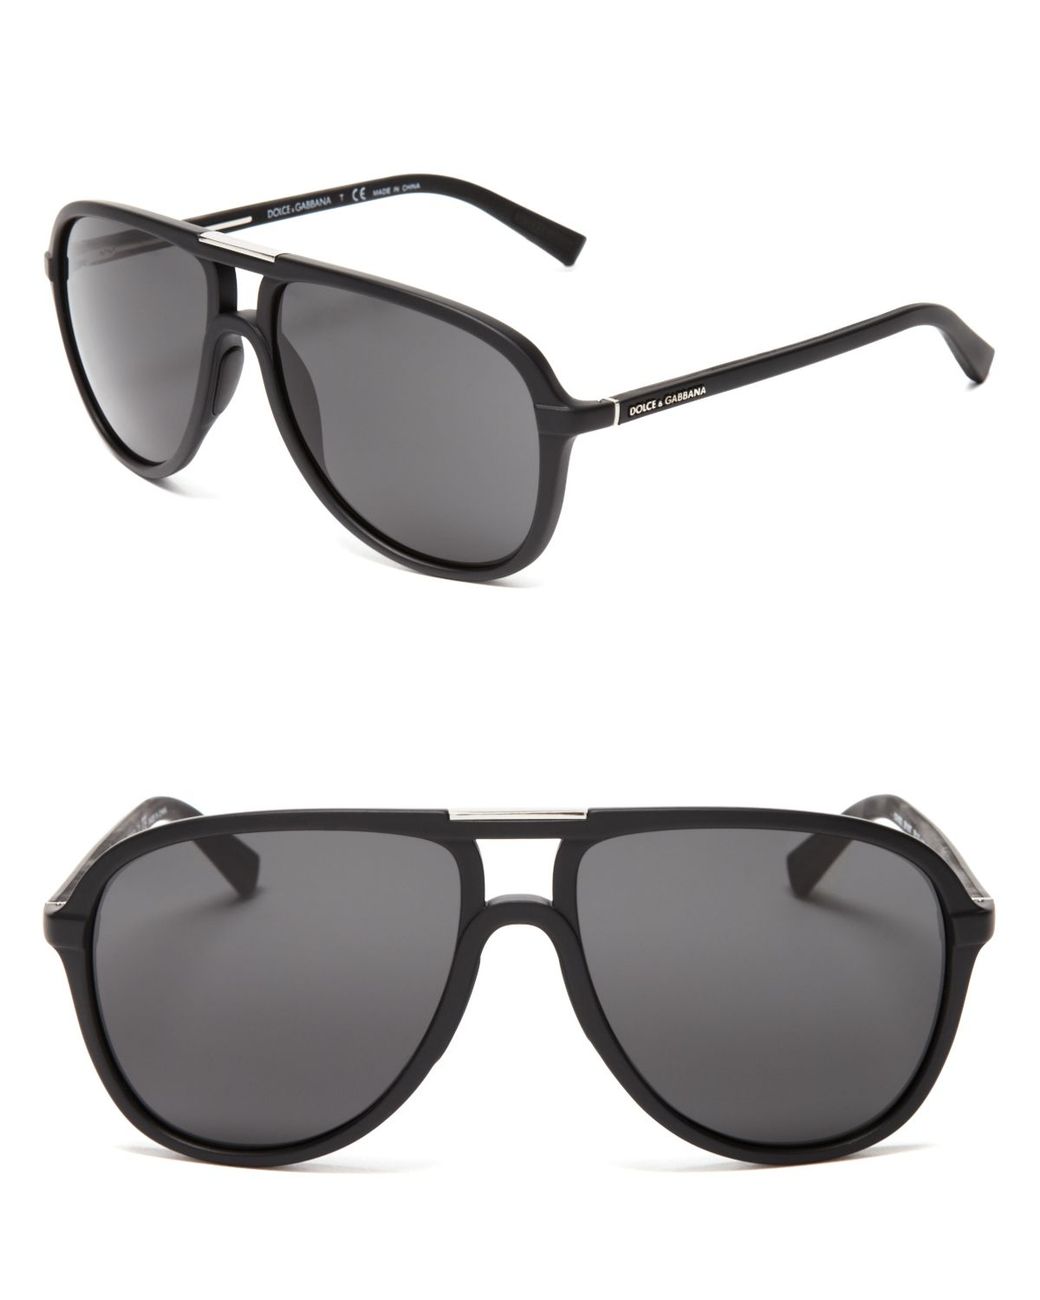 Dolce & Gabbana Sport-Inspired Aviator Sunglasses in Black Men | Lyst